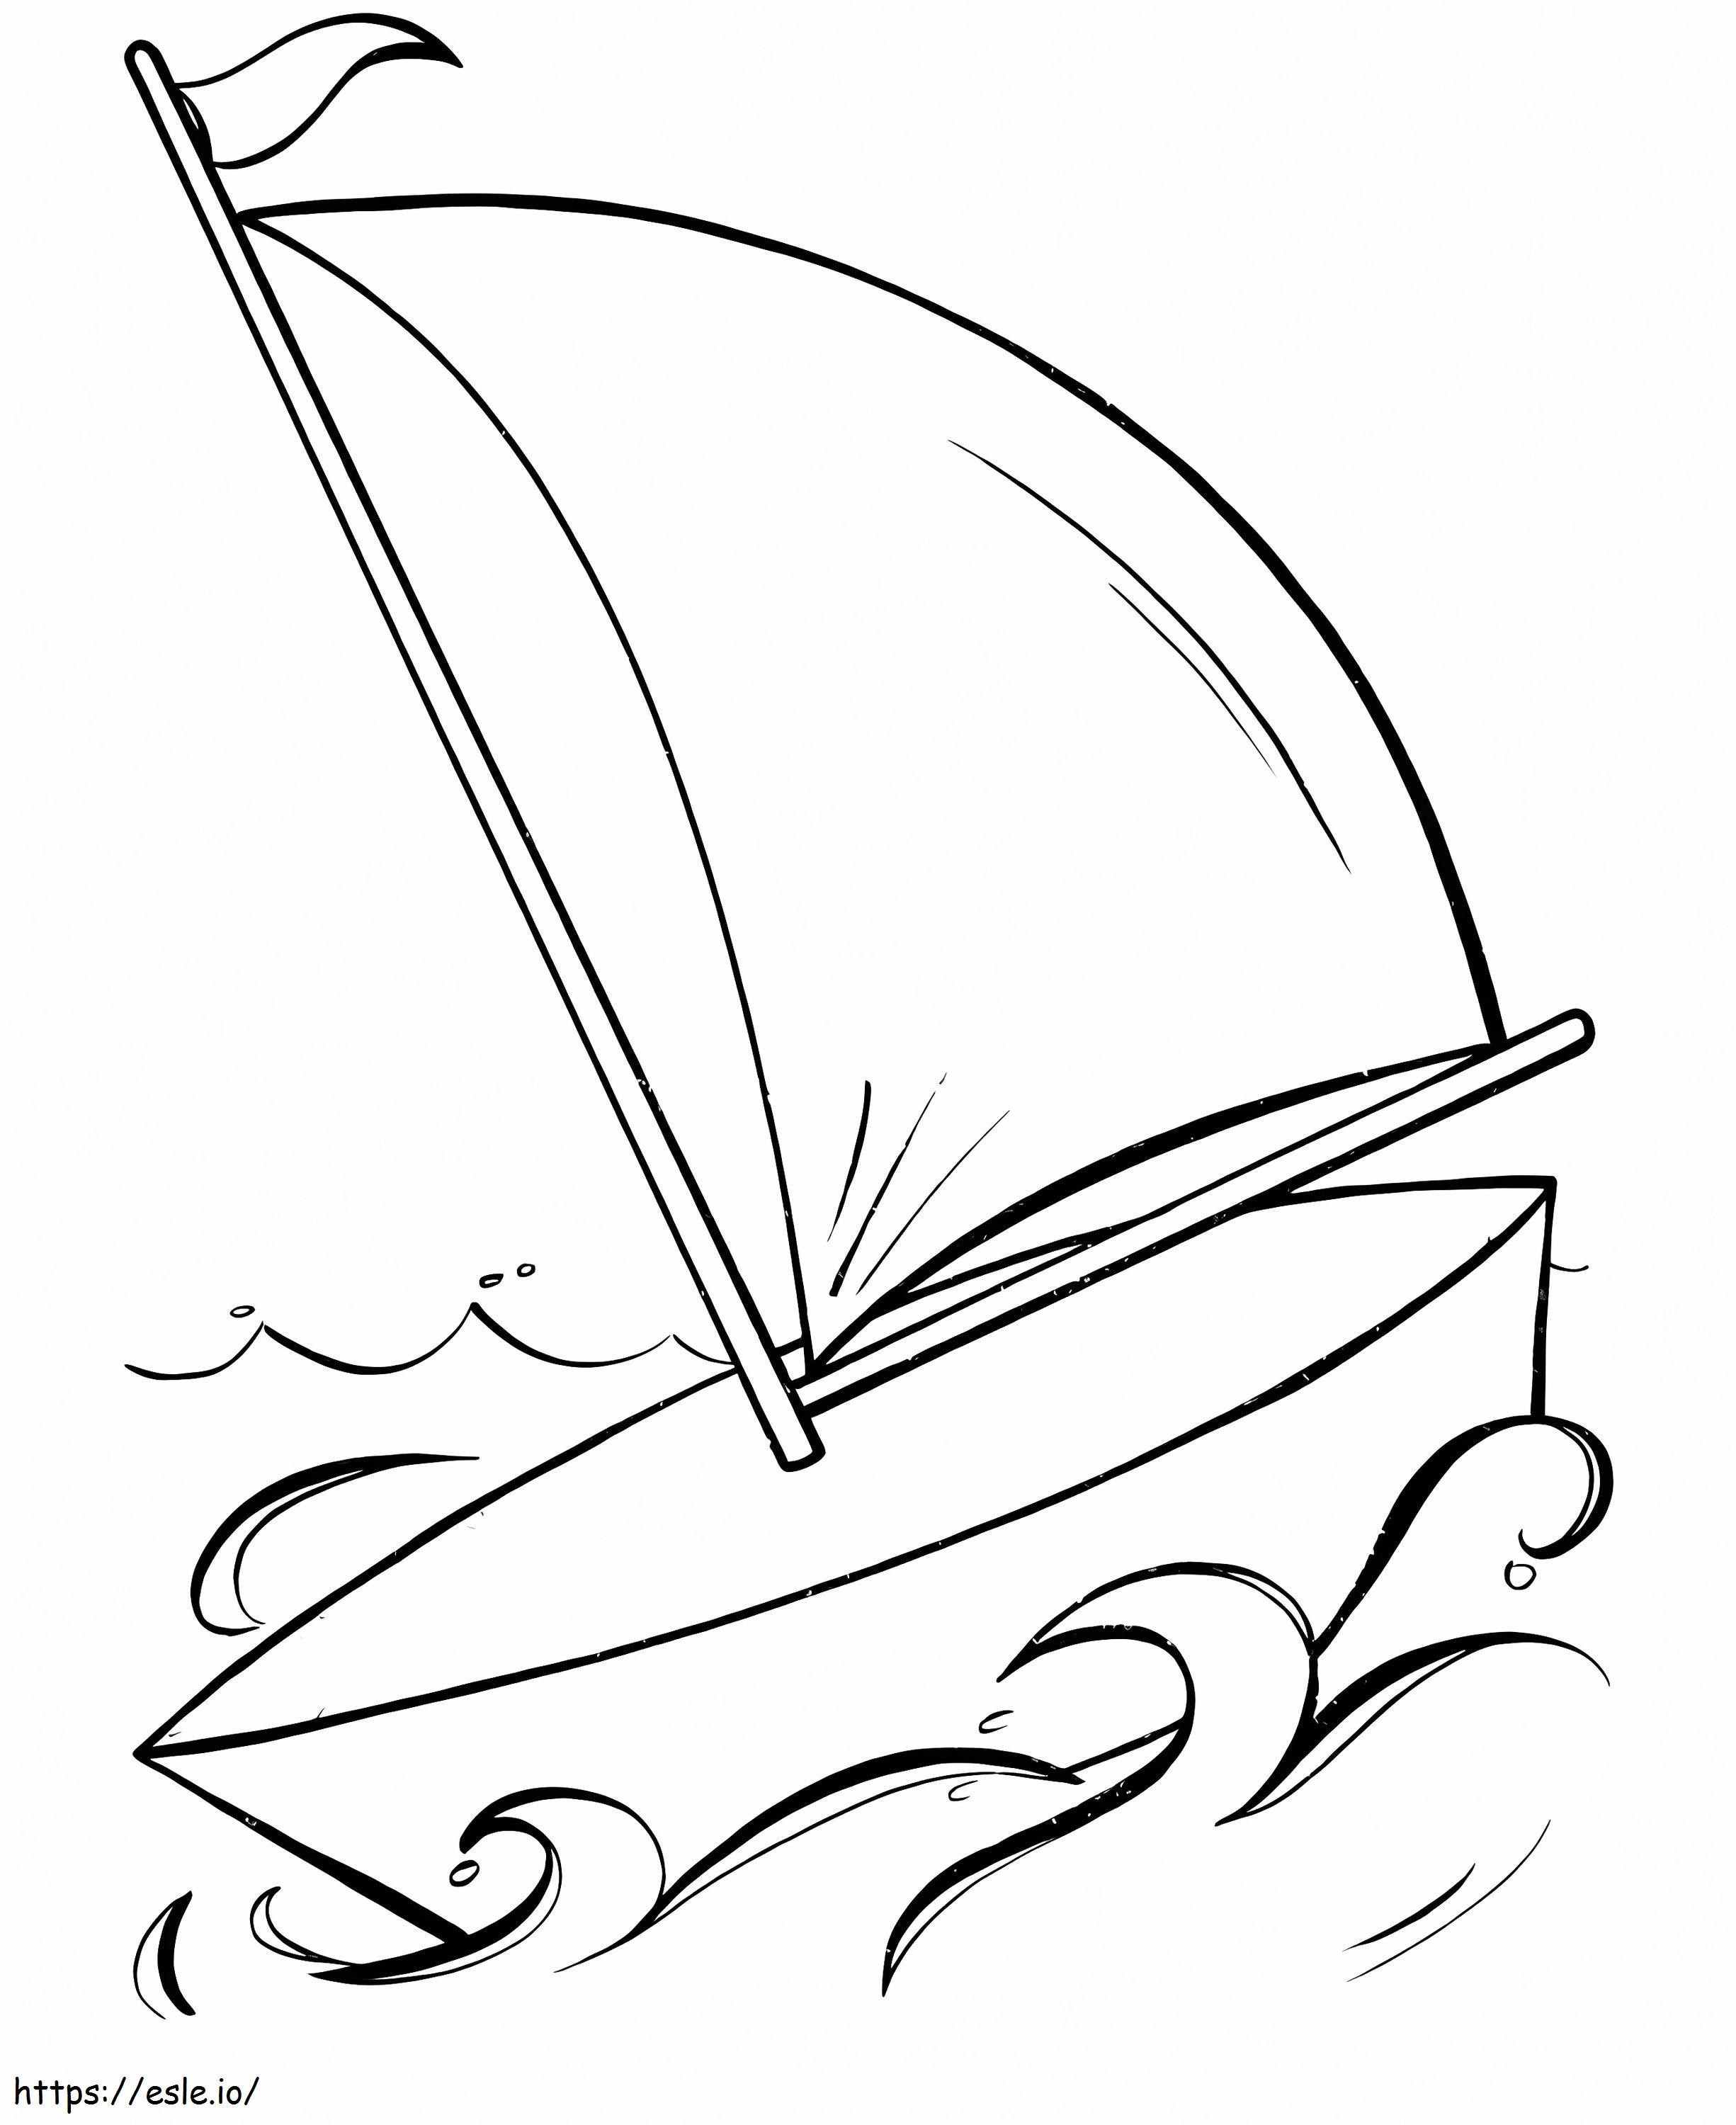 Zeilboot gratis afdrukbaar kleurplaat kleurplaat